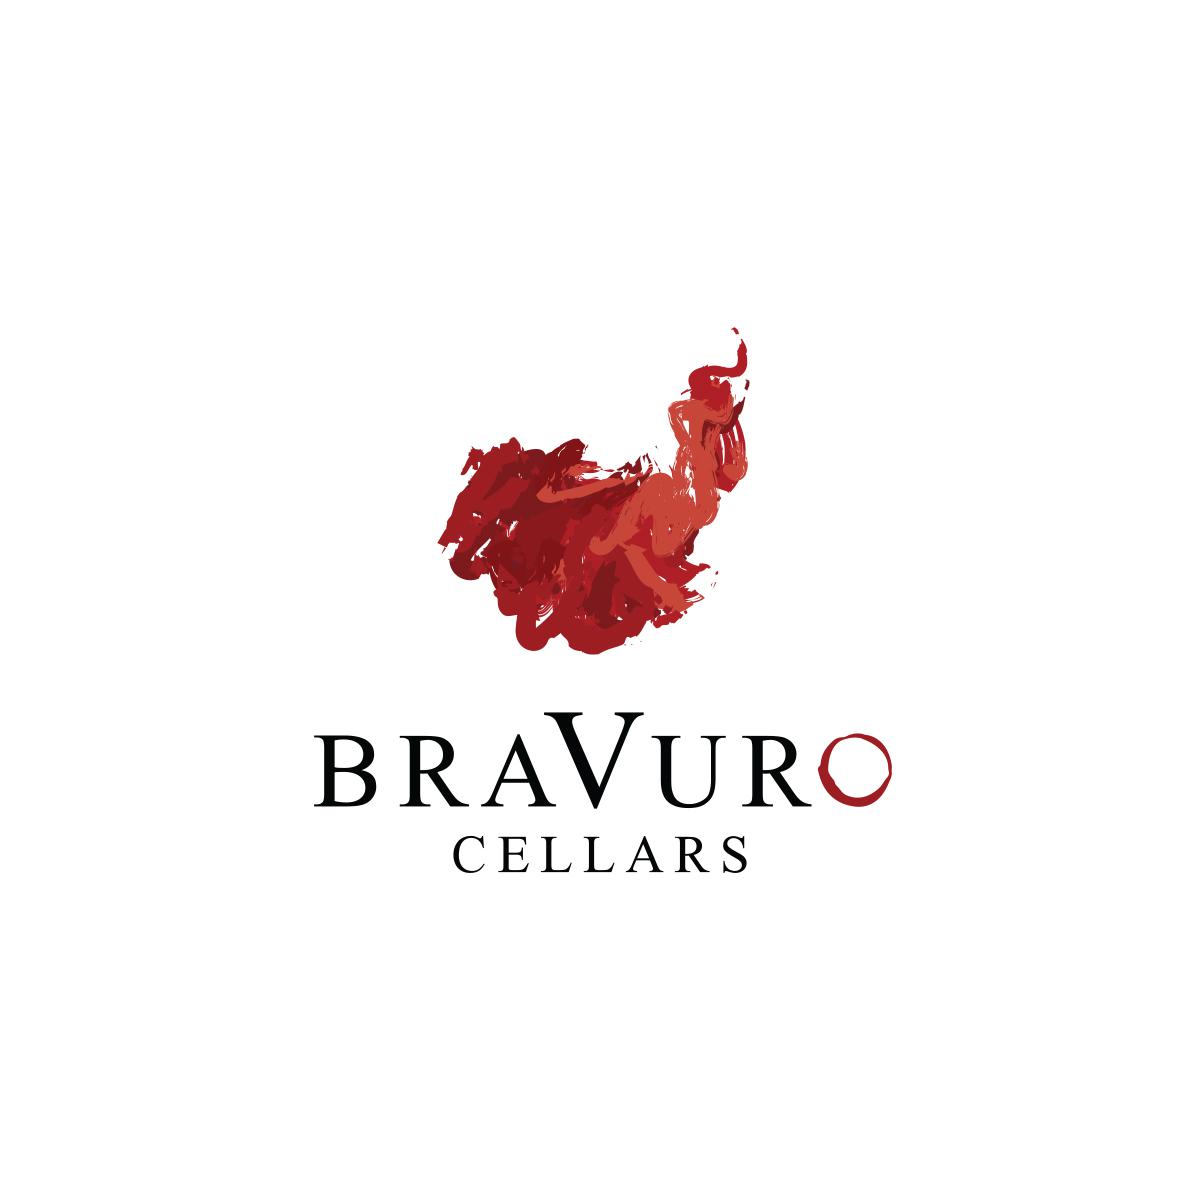 Image for Bravuro Cellars